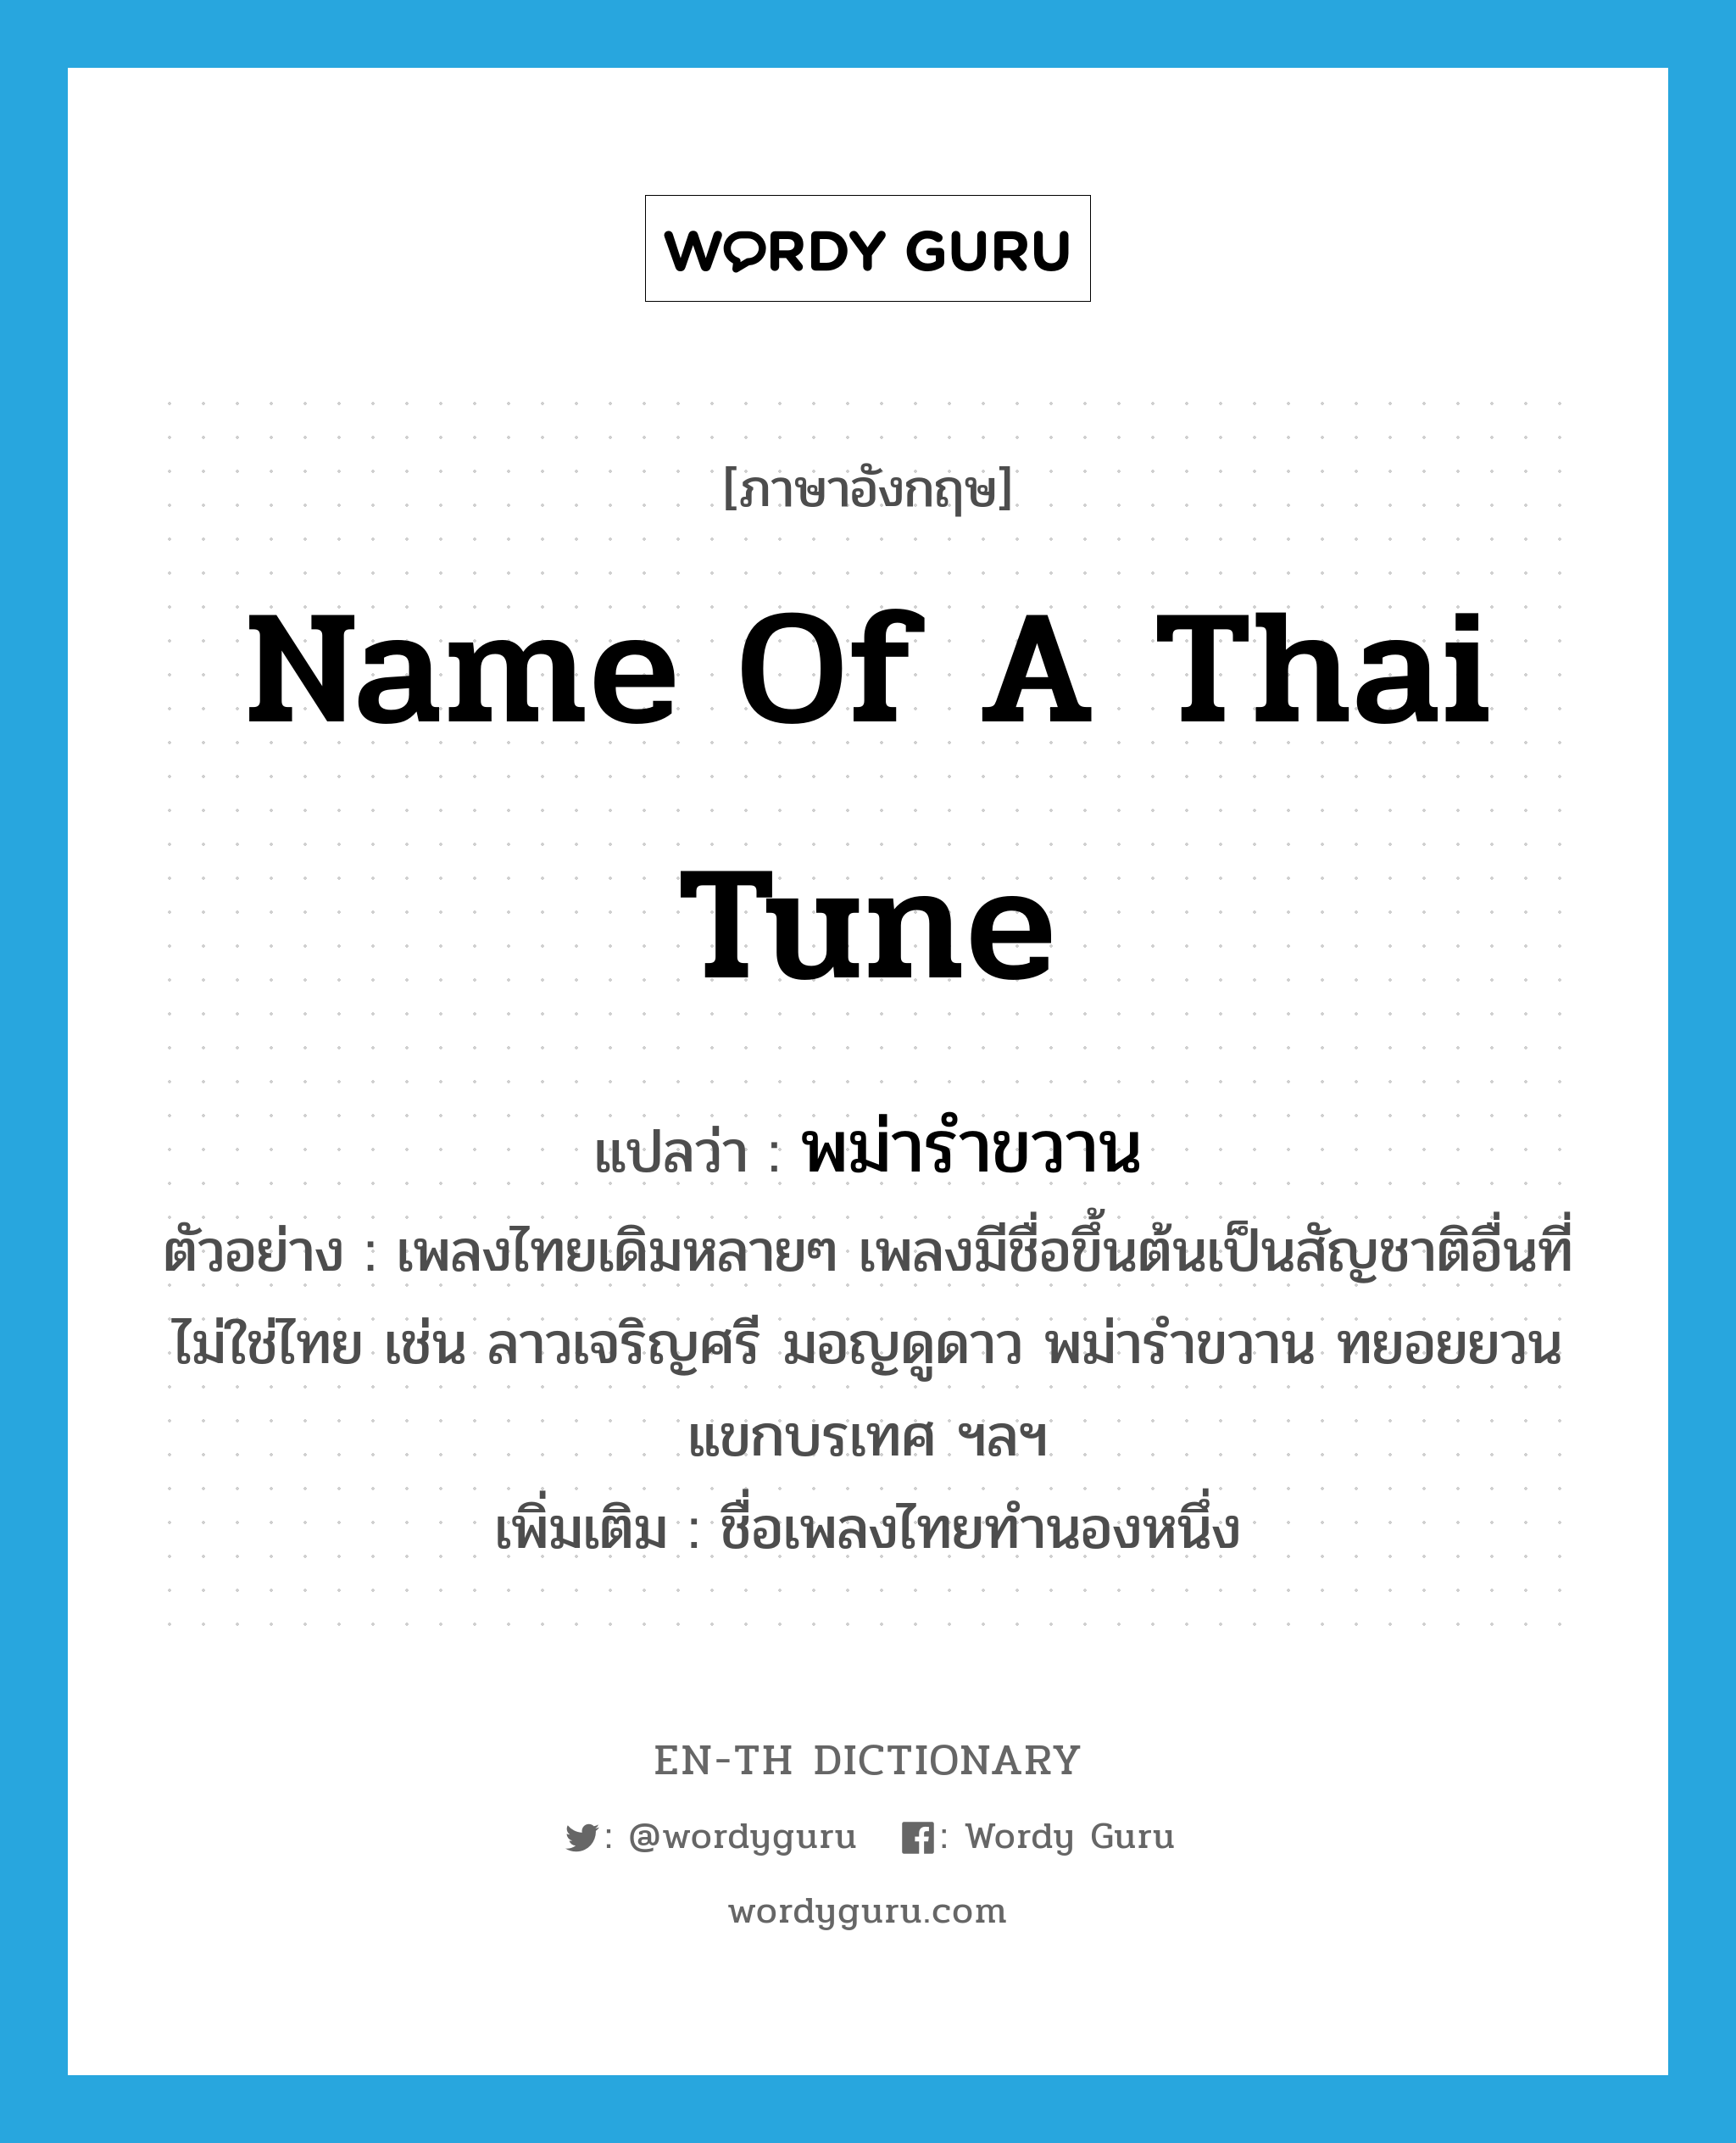 name of a Thai tune แปลว่า?, คำศัพท์ภาษาอังกฤษ name of a Thai tune แปลว่า พม่ารำขวาน ประเภท N ตัวอย่าง เพลงไทยเดิมหลายๆ เพลงมีชื่อขึ้นต้นเป็นสัญชาติอื่นที่ไม่ใช่ไทย เช่น ลาวเจริญศรี มอญดูดาว พม่ารำขวาน ทยอยยวน แขกบรเทศ ฯลฯ เพิ่มเติม ชื่อเพลงไทยทำนองหนึ่ง หมวด N